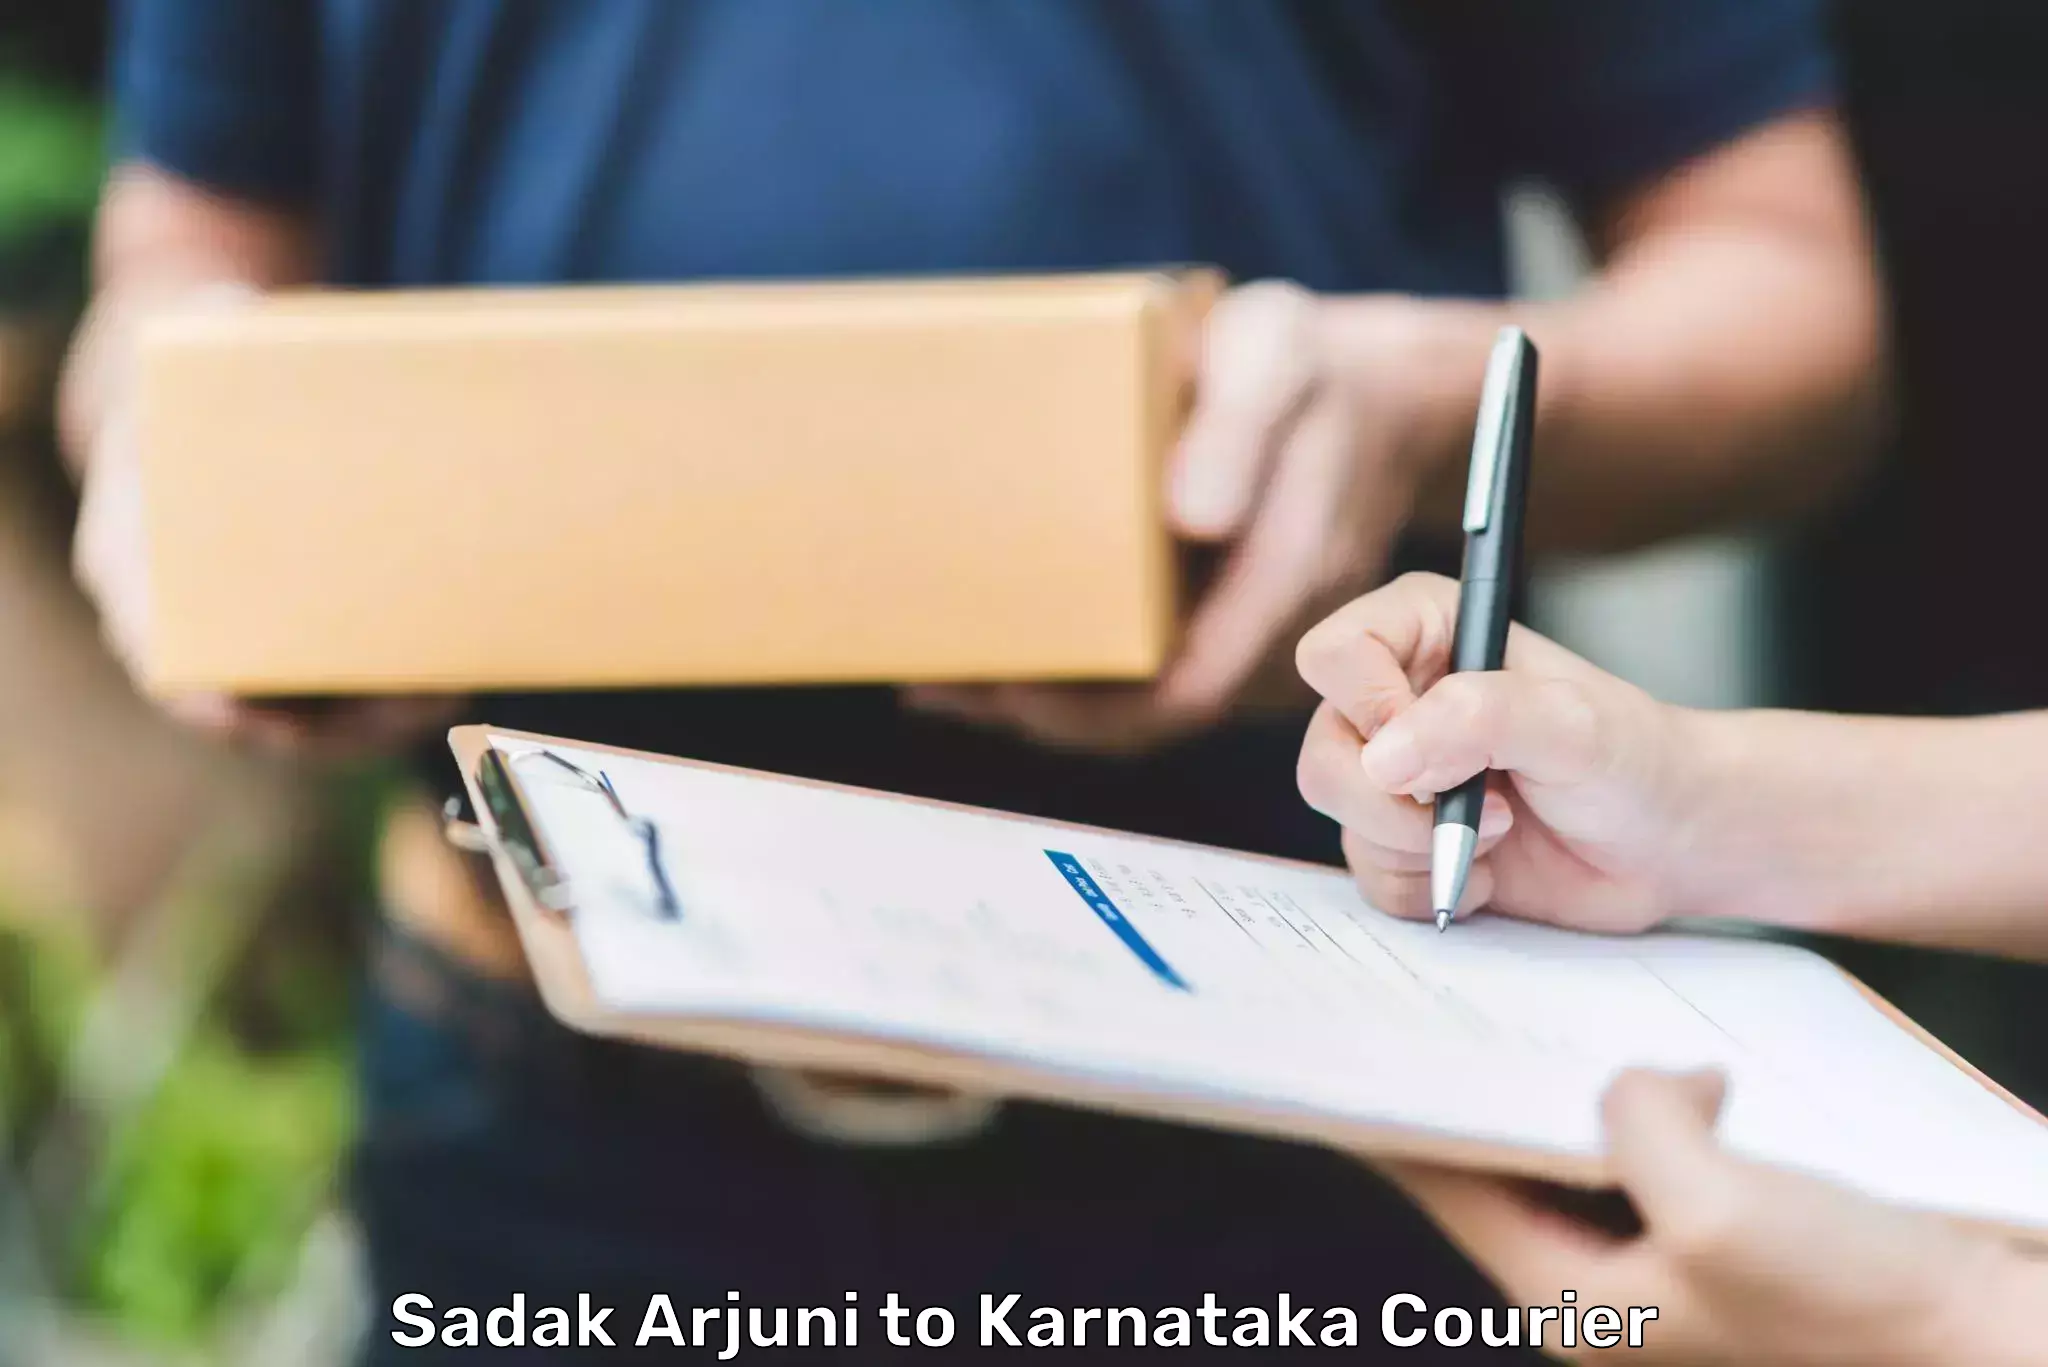 E-commerce fulfillment Sadak Arjuni to Karnataka